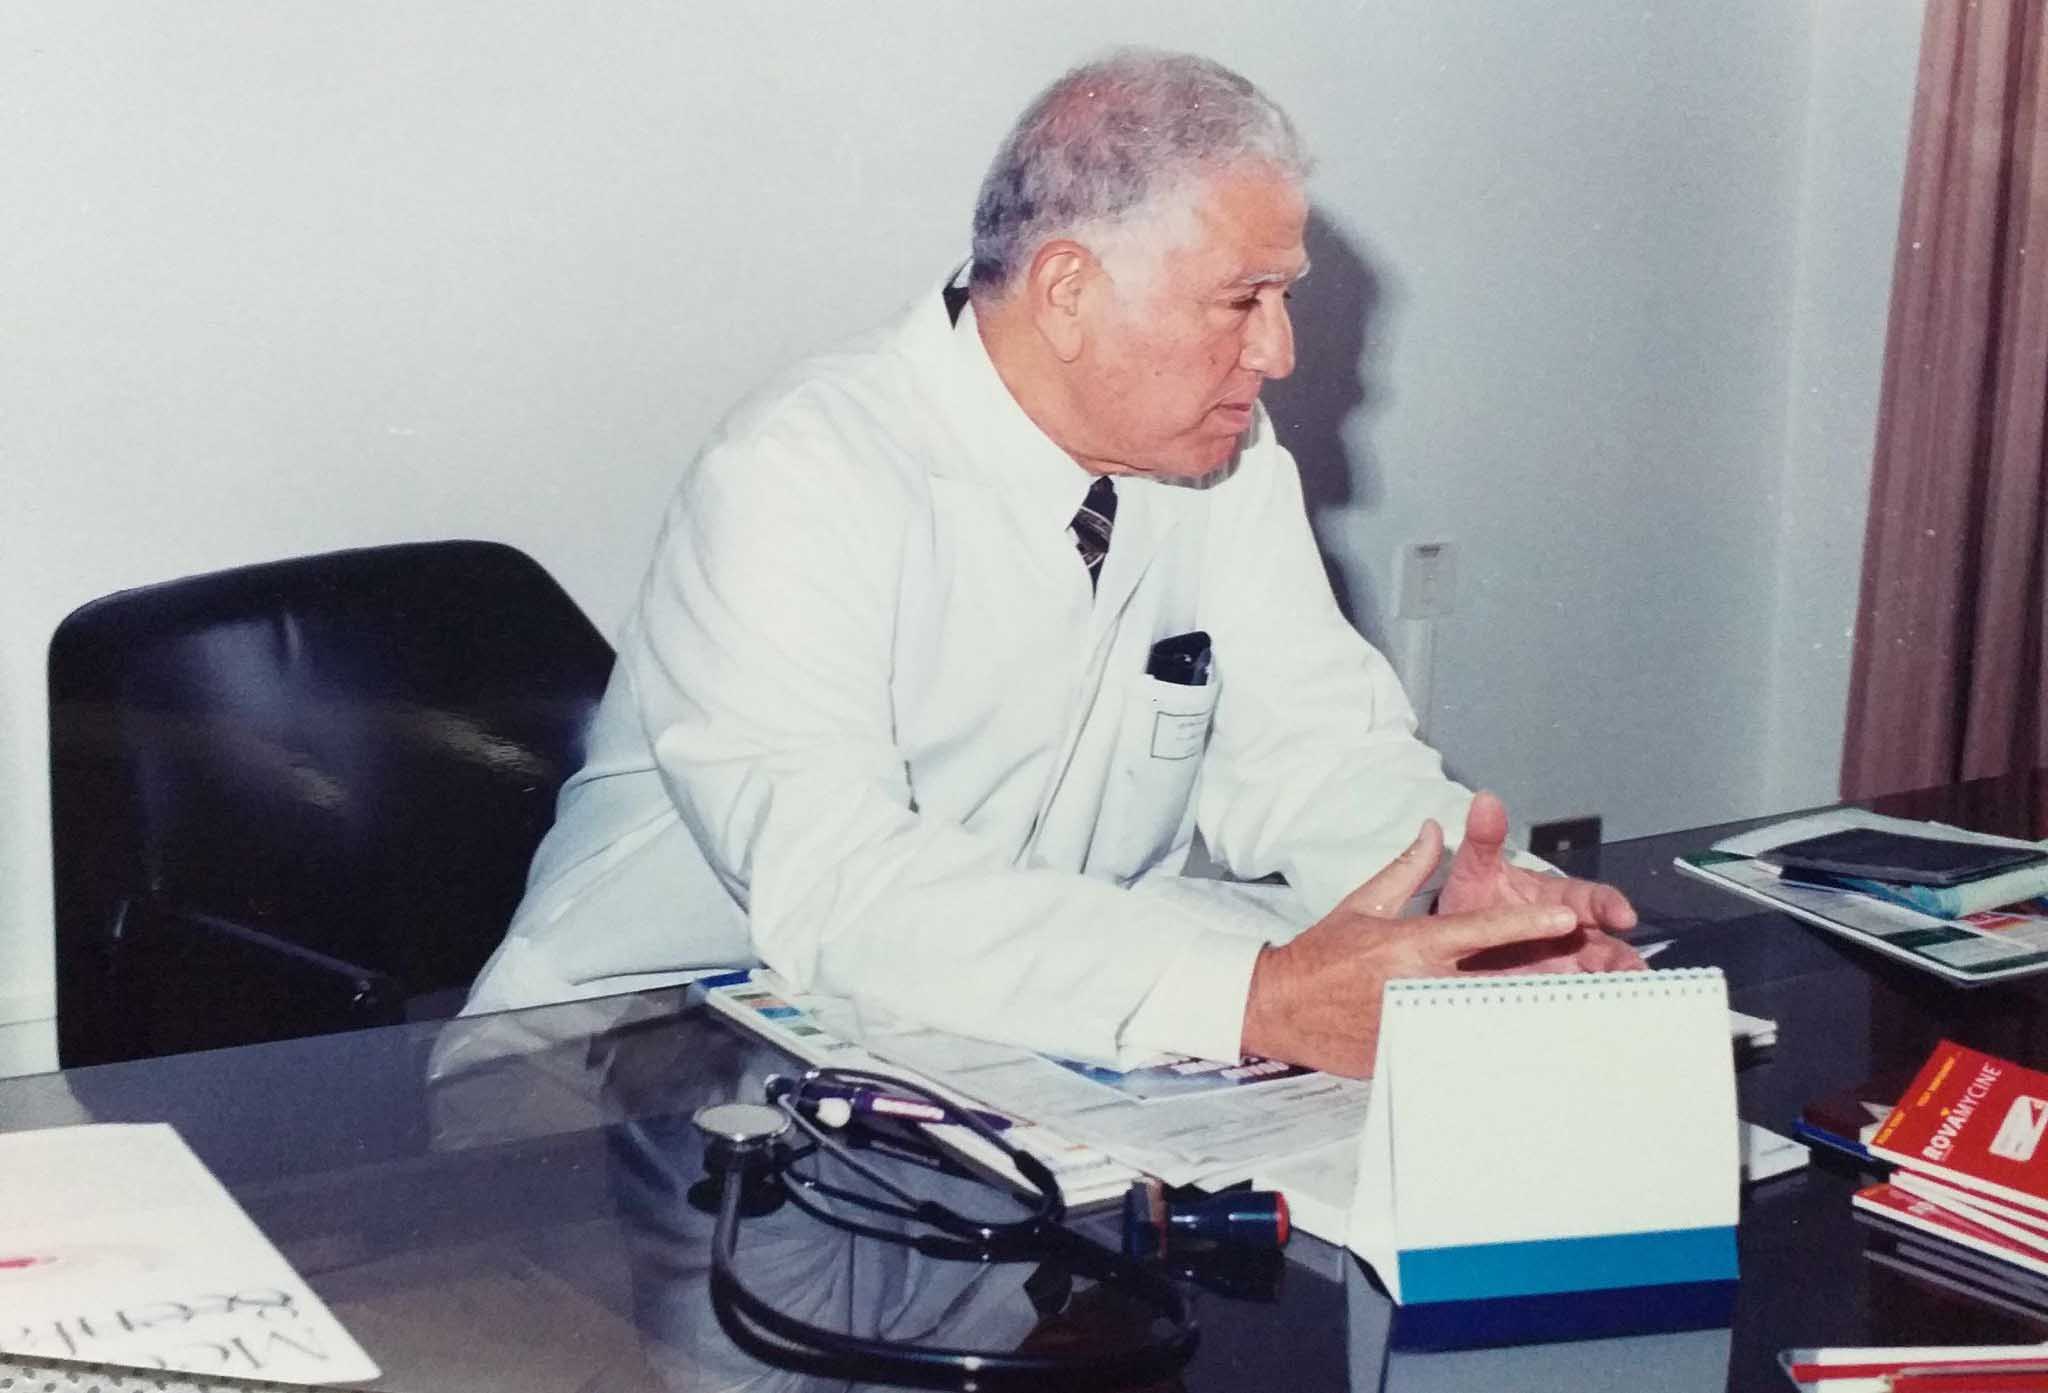 د. علي التريكي: أول طبيب أطفال أستاذ استشفائي جامعي بعد الاستقلال بصفاقس عميد كلية الطب بصفاقس 1990-1996